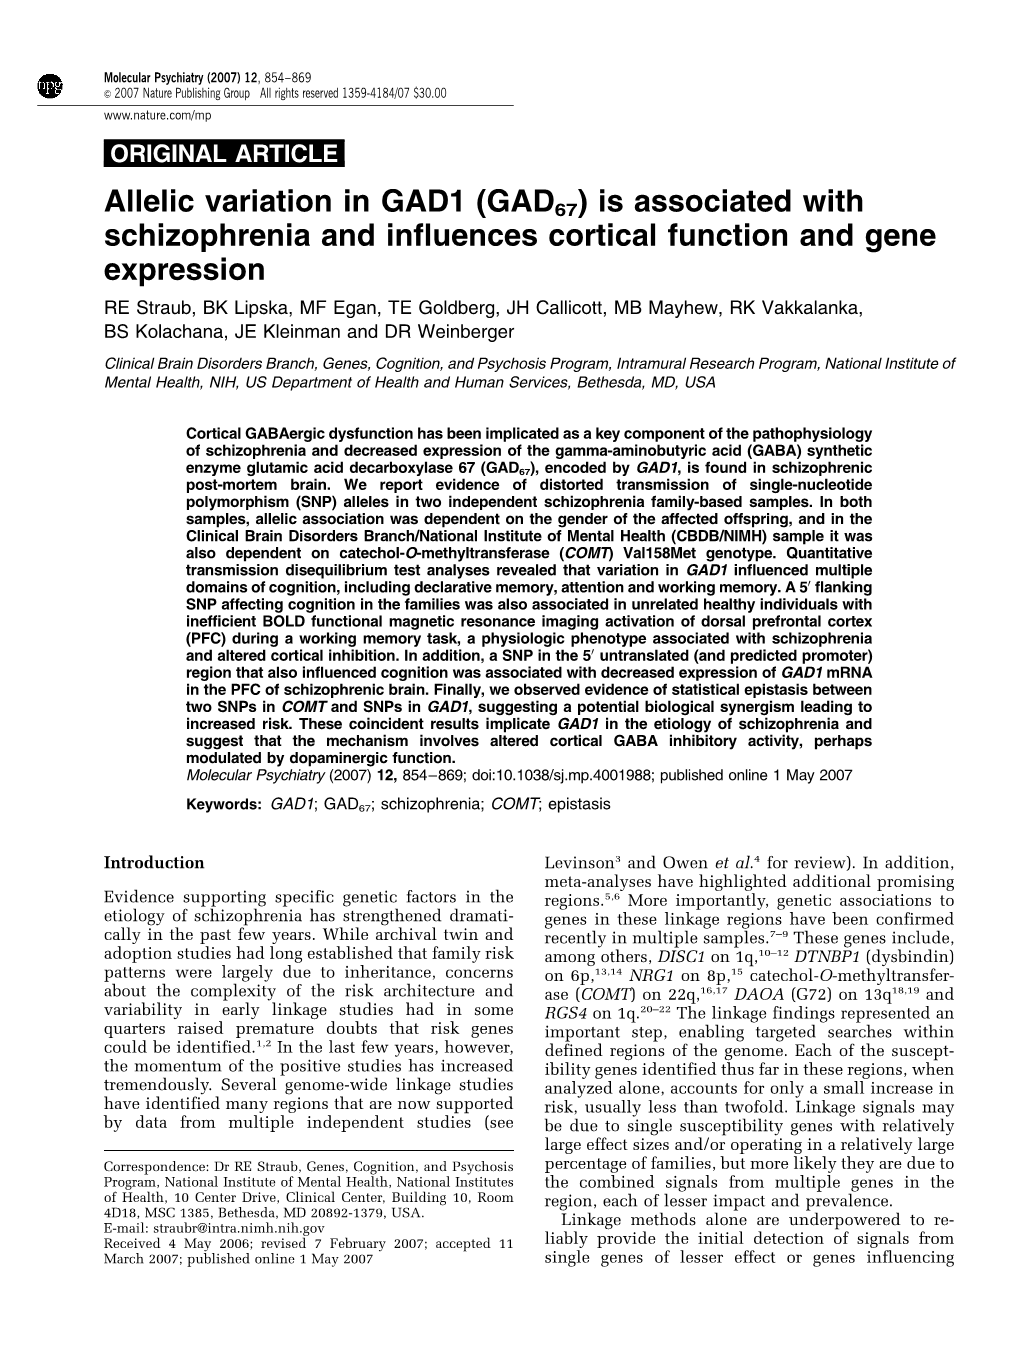 Allelic Variation in GAD1 (GAD67)